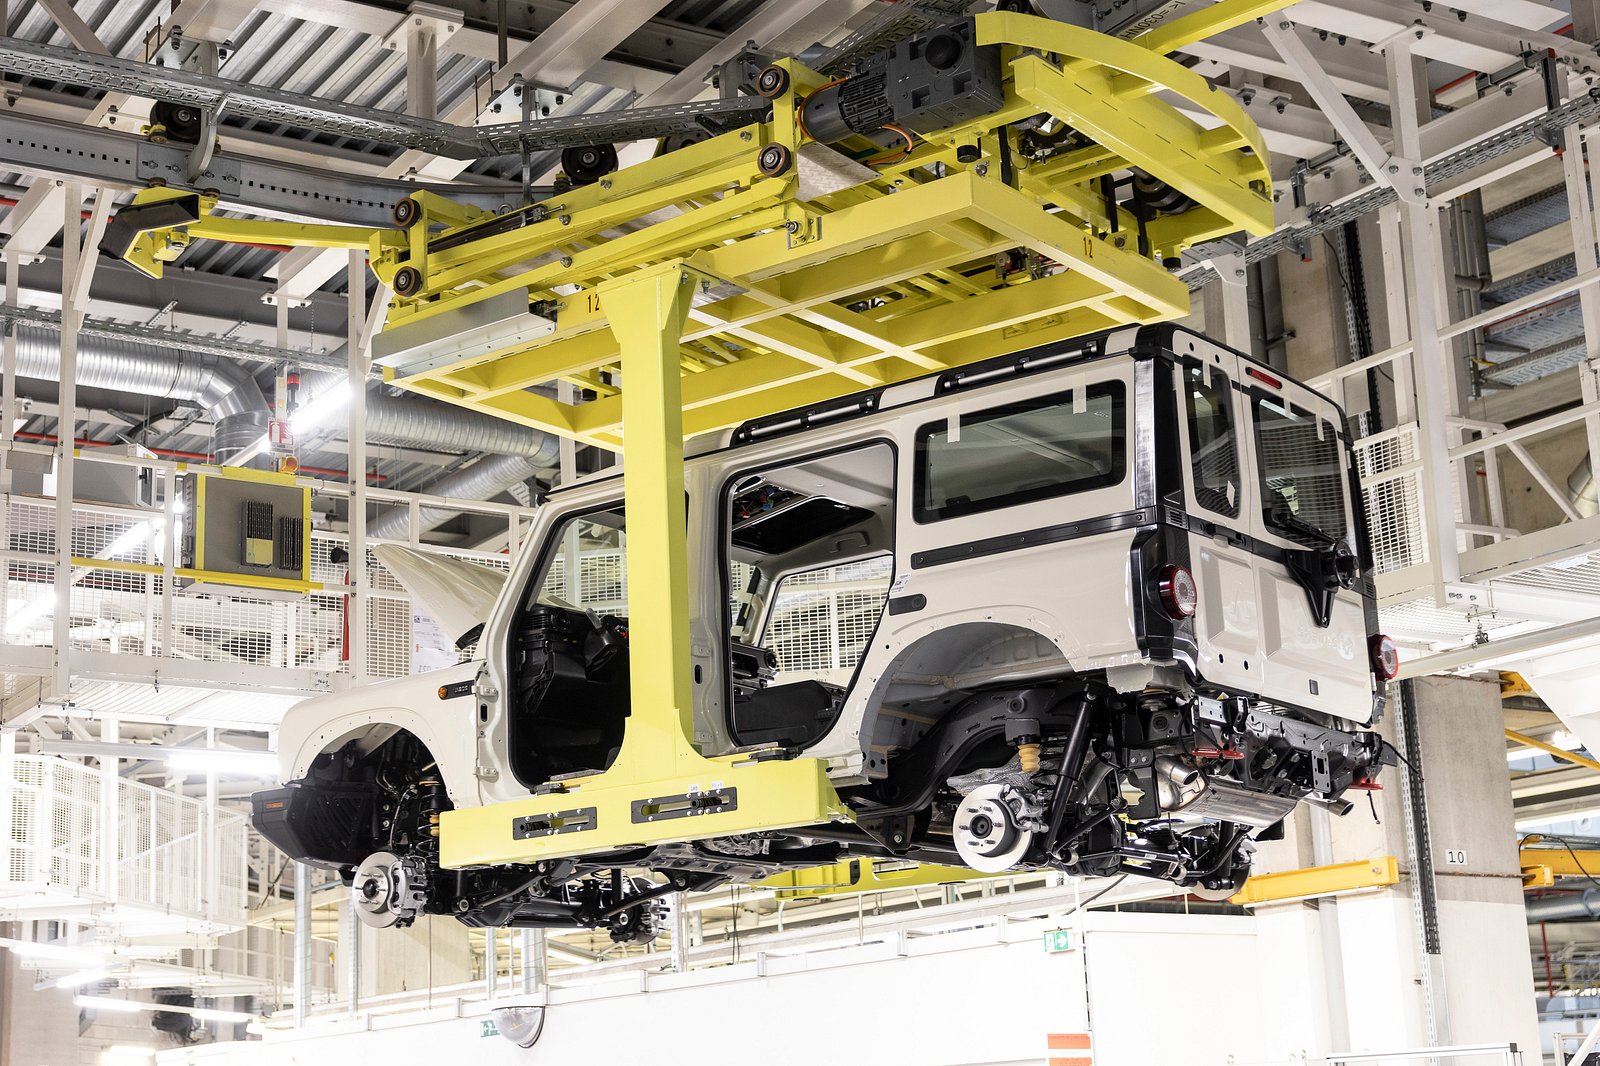 2022 CAR FACTORY - خط إنتاج FORD BRONCO 4x4 - مصنع تجميع Bronco الجديد في الولايات المتحدة (كيف يتم تصنيعه)